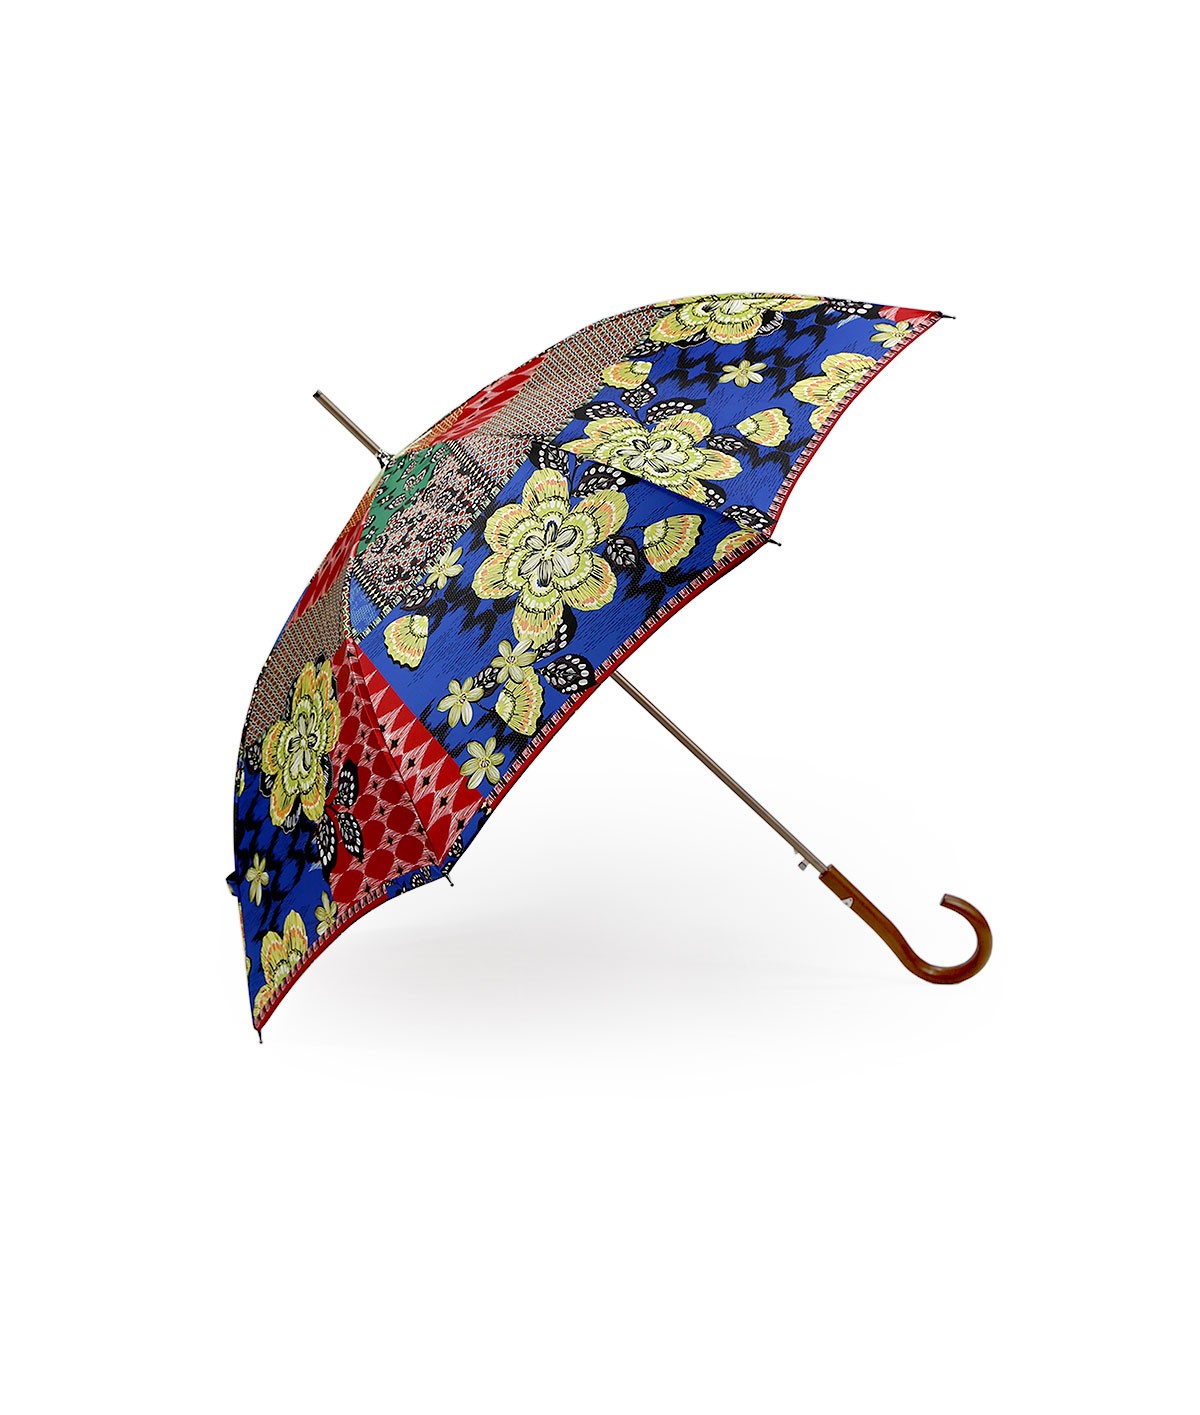 → Parapluie Satin Imprimé Fantaisie - Long Automatic N°5 - Made in France par Maison Pierre Vaux Fabricant Français de Parapluie